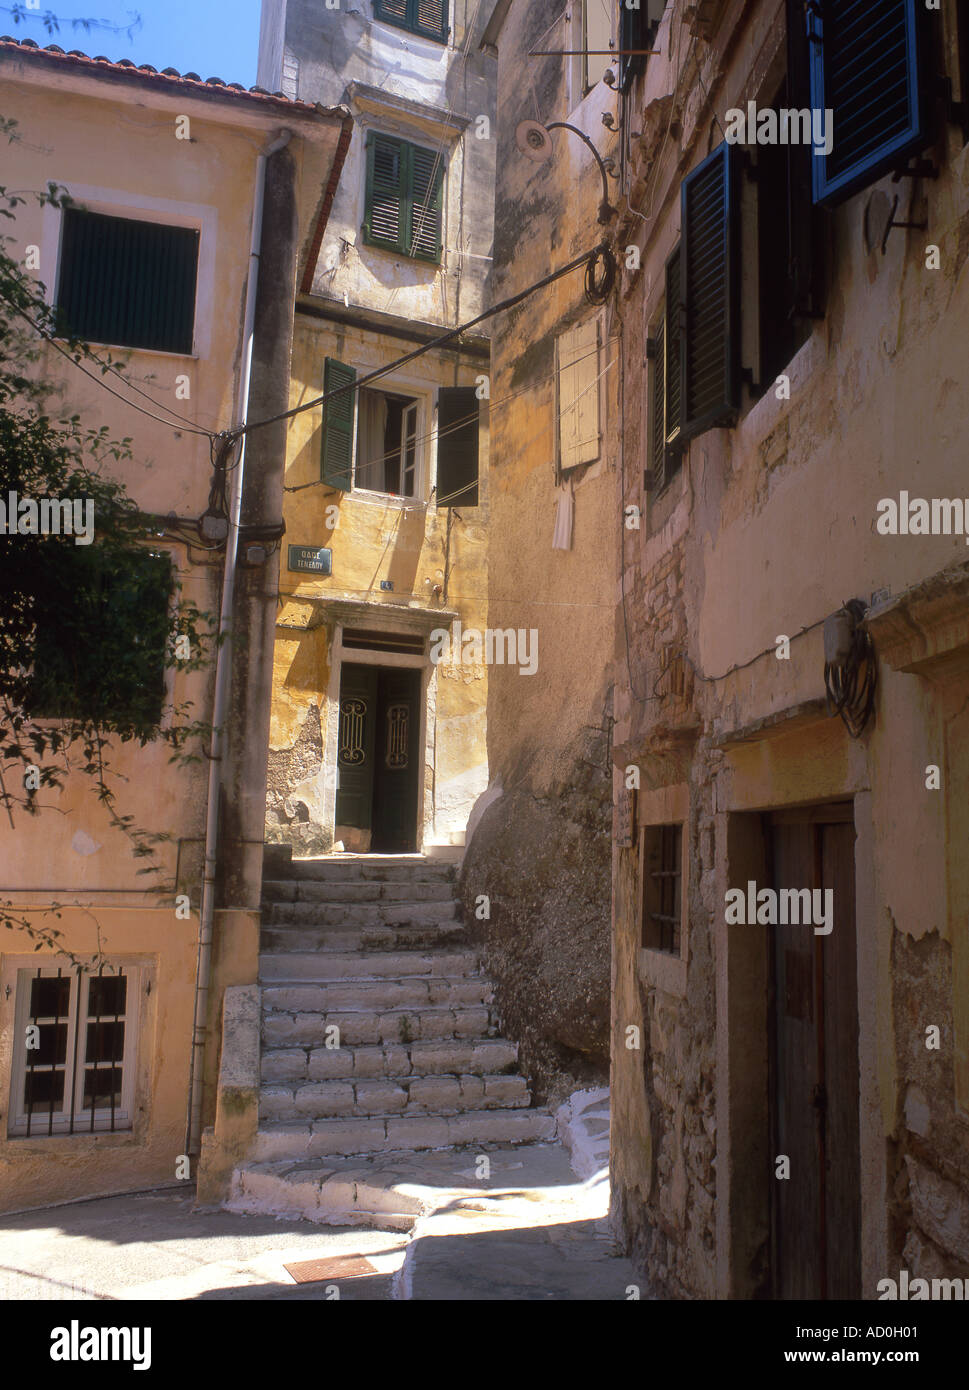 Typische griechische Backstreet im Cambiello oder Altstadt von Korfu-Stadt Korfu Griechenland Stockfoto